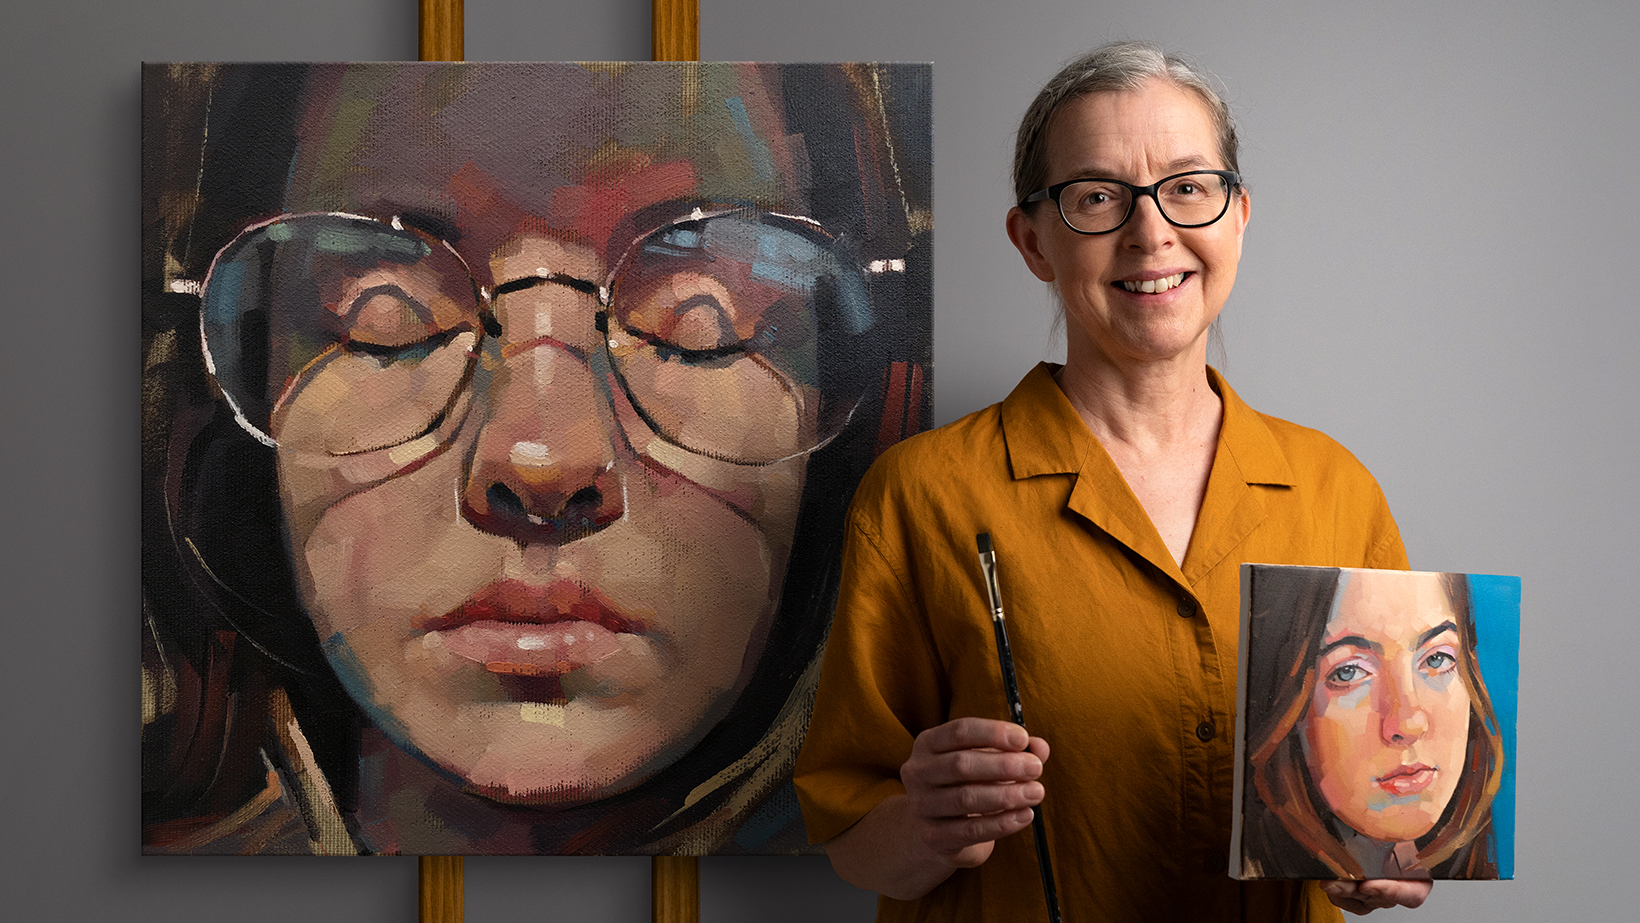  Portretschilderen met olieverf: verken licht en schaduw